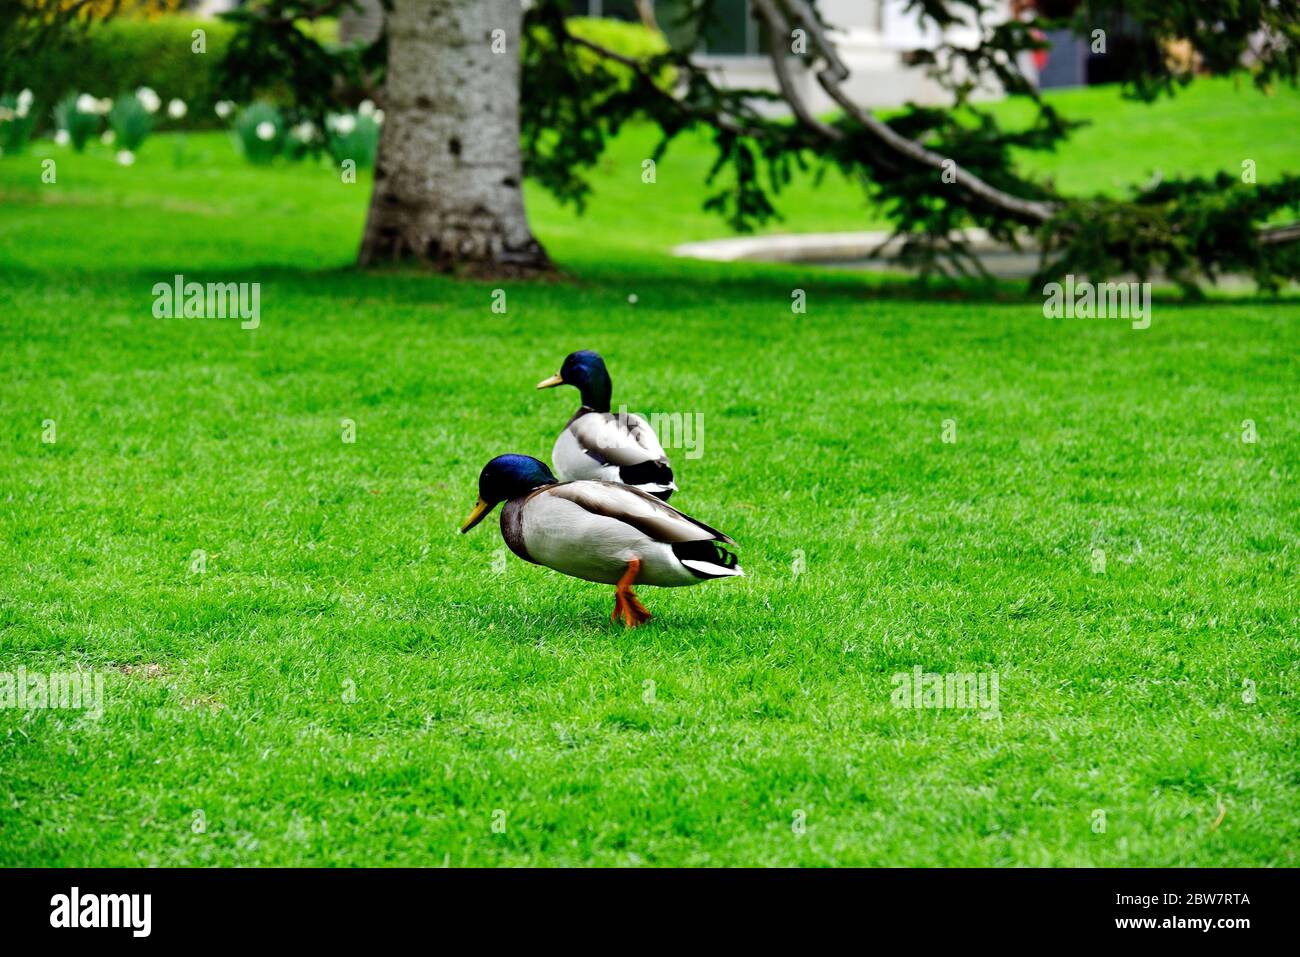 Ducks in the Real Jardin Botanico in Madrid, Spain Stock Photo